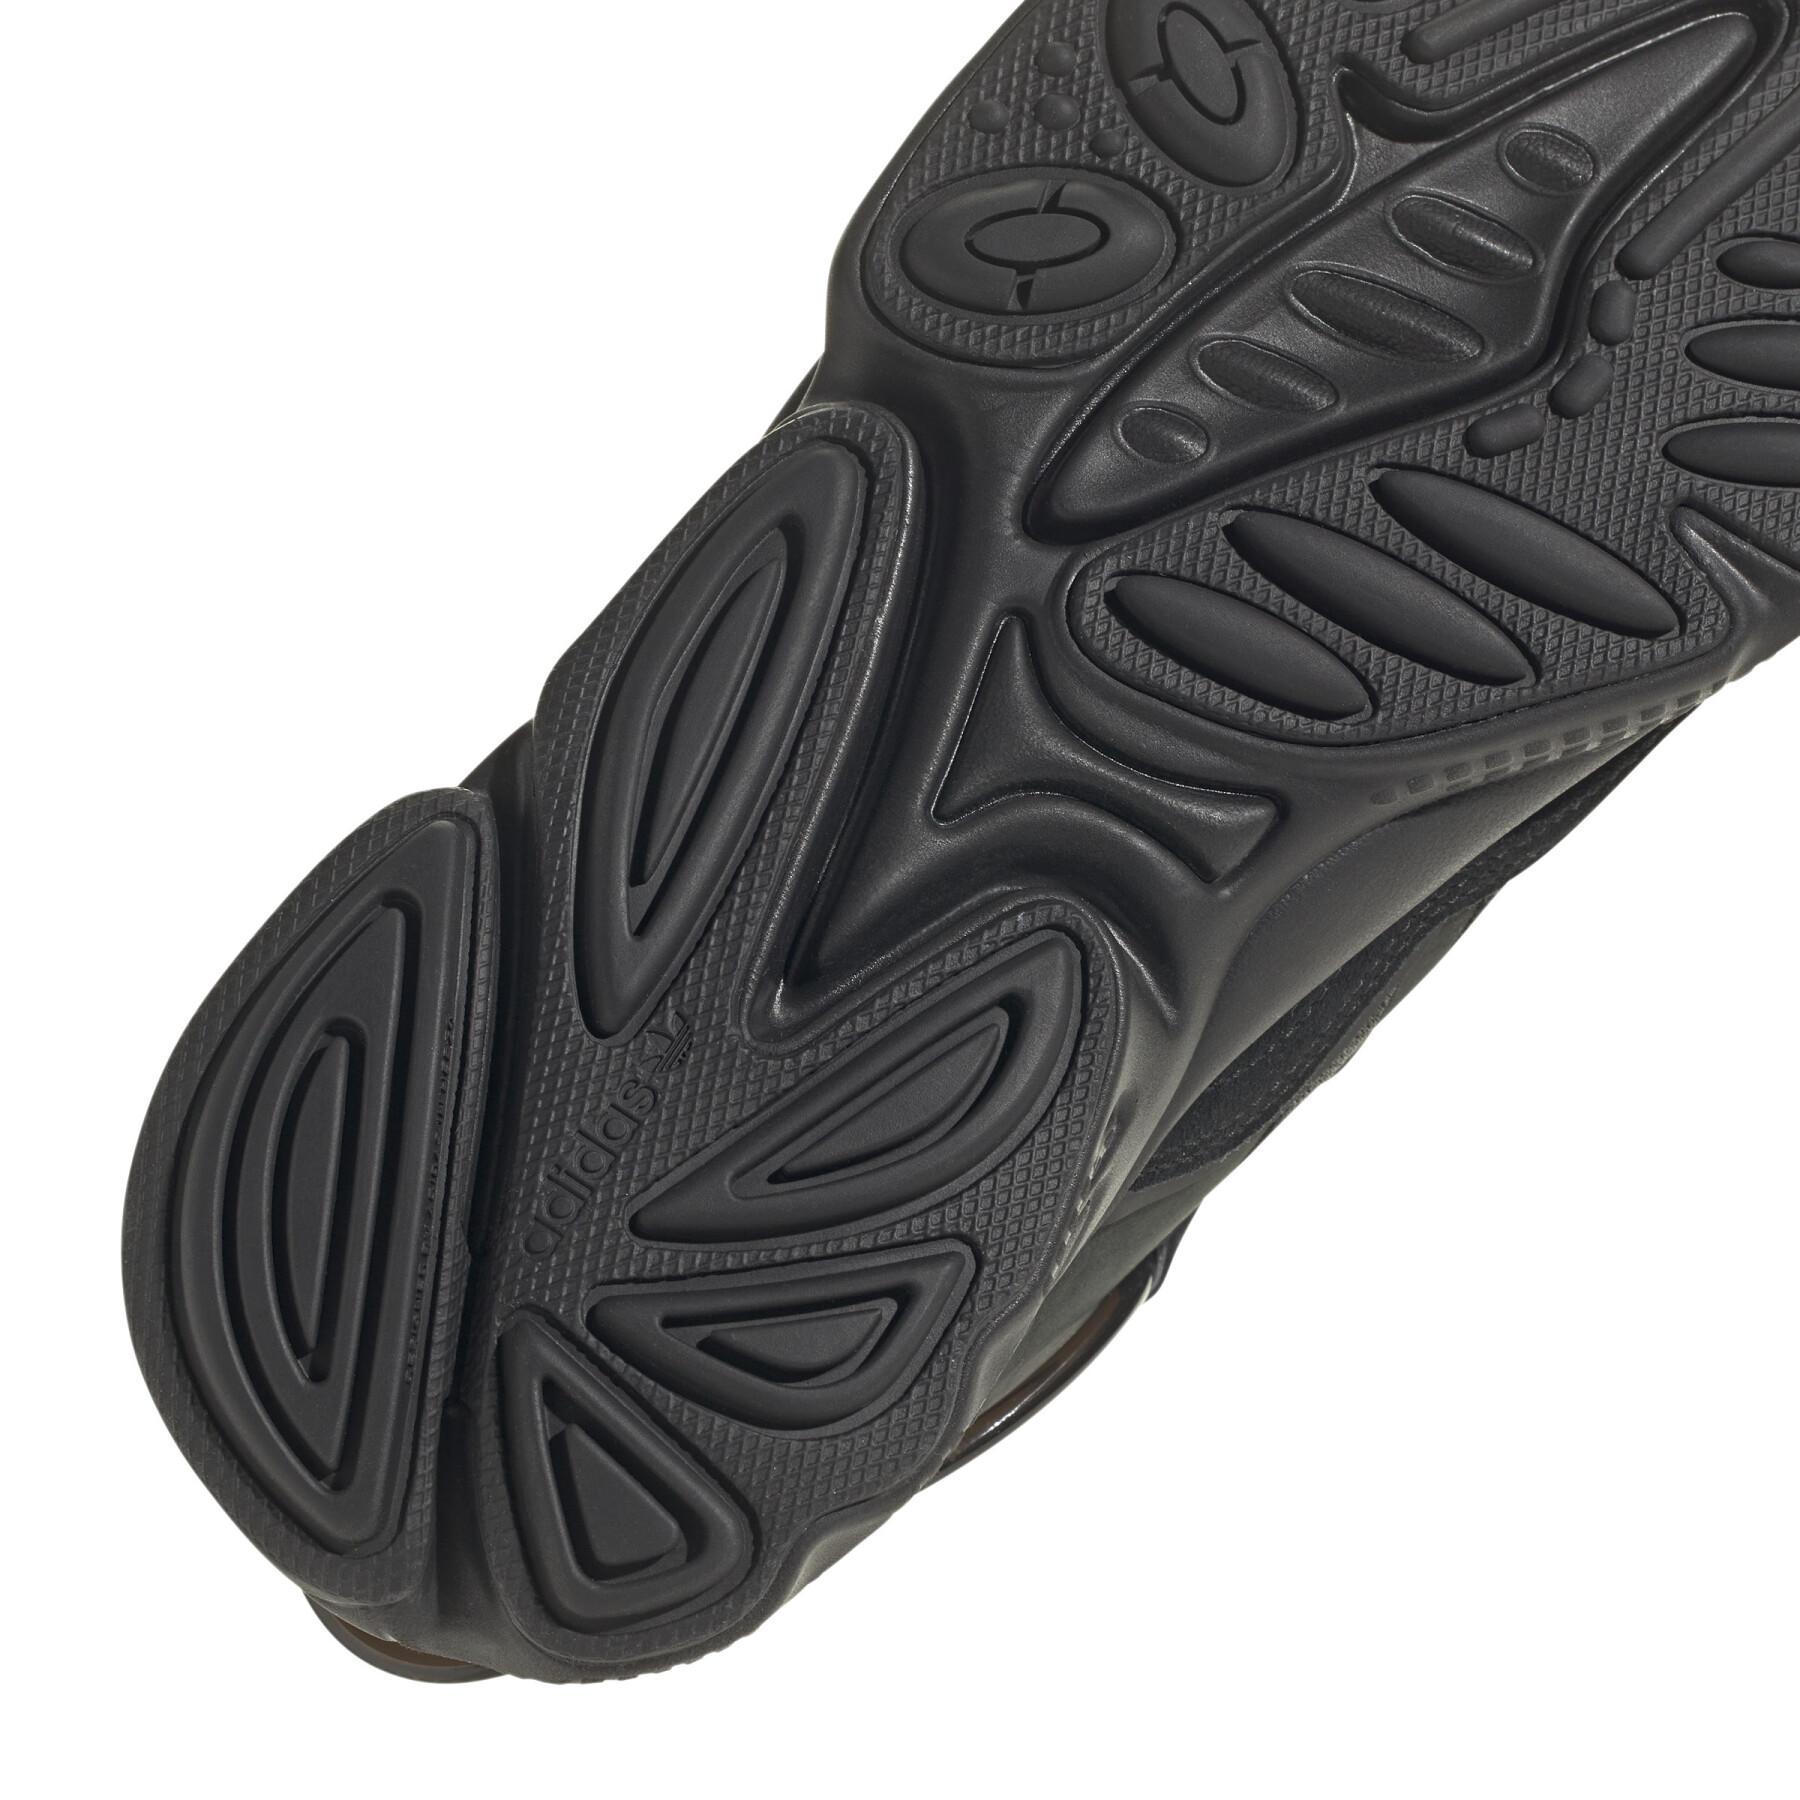 Zapatillas de deporte para mujeres adidas Originals Ozweego